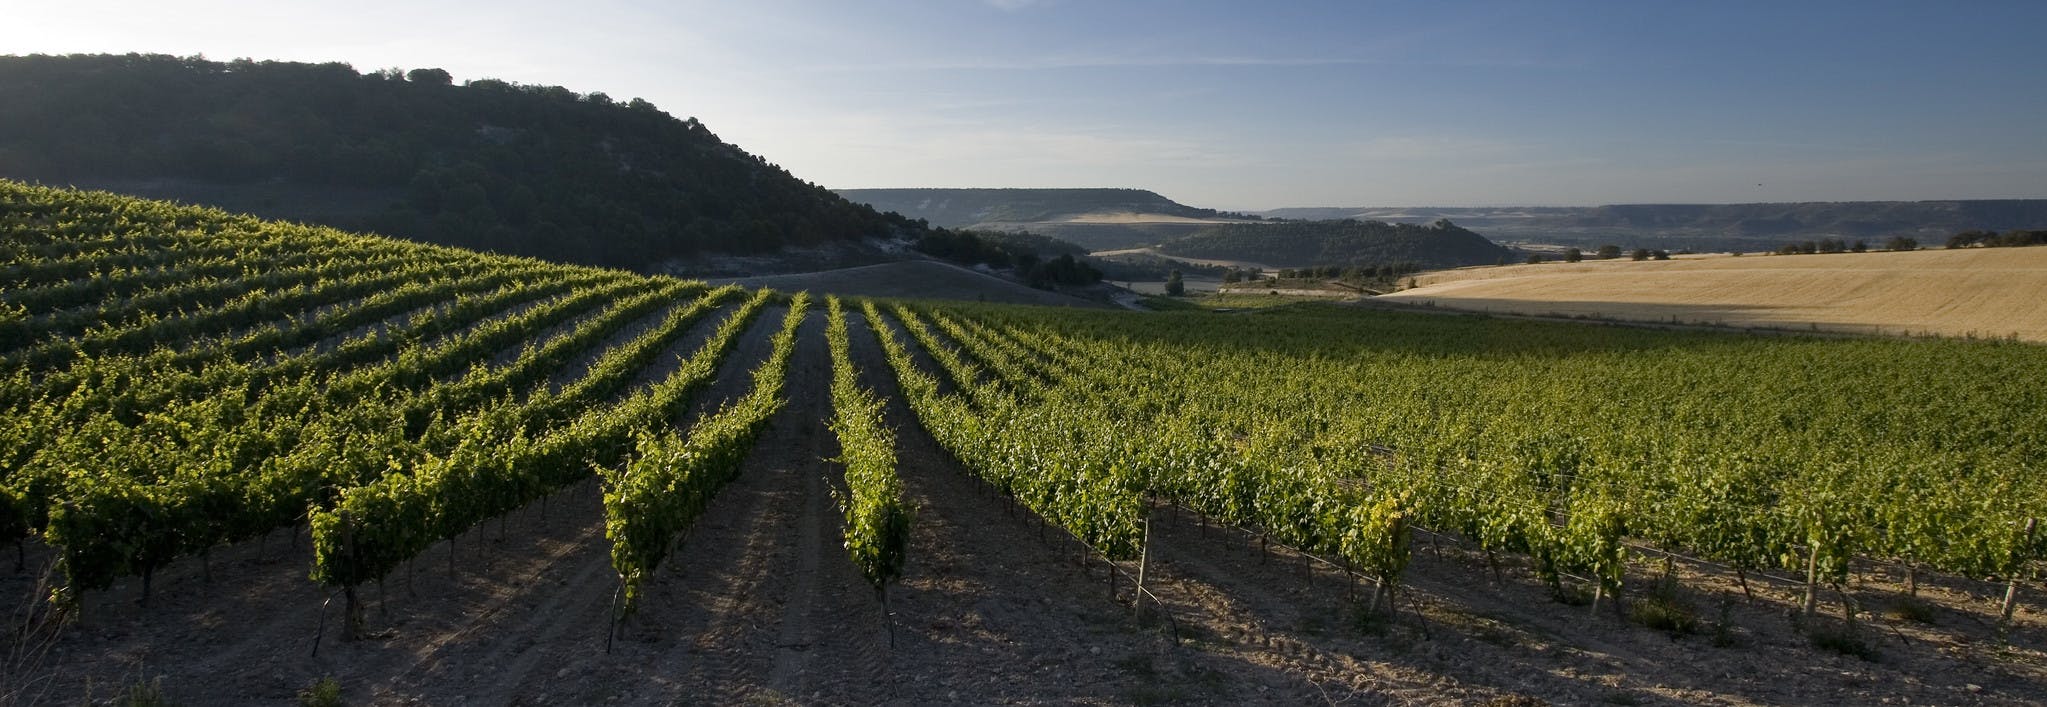 Les vins de la Ribera del Duero, Espagne